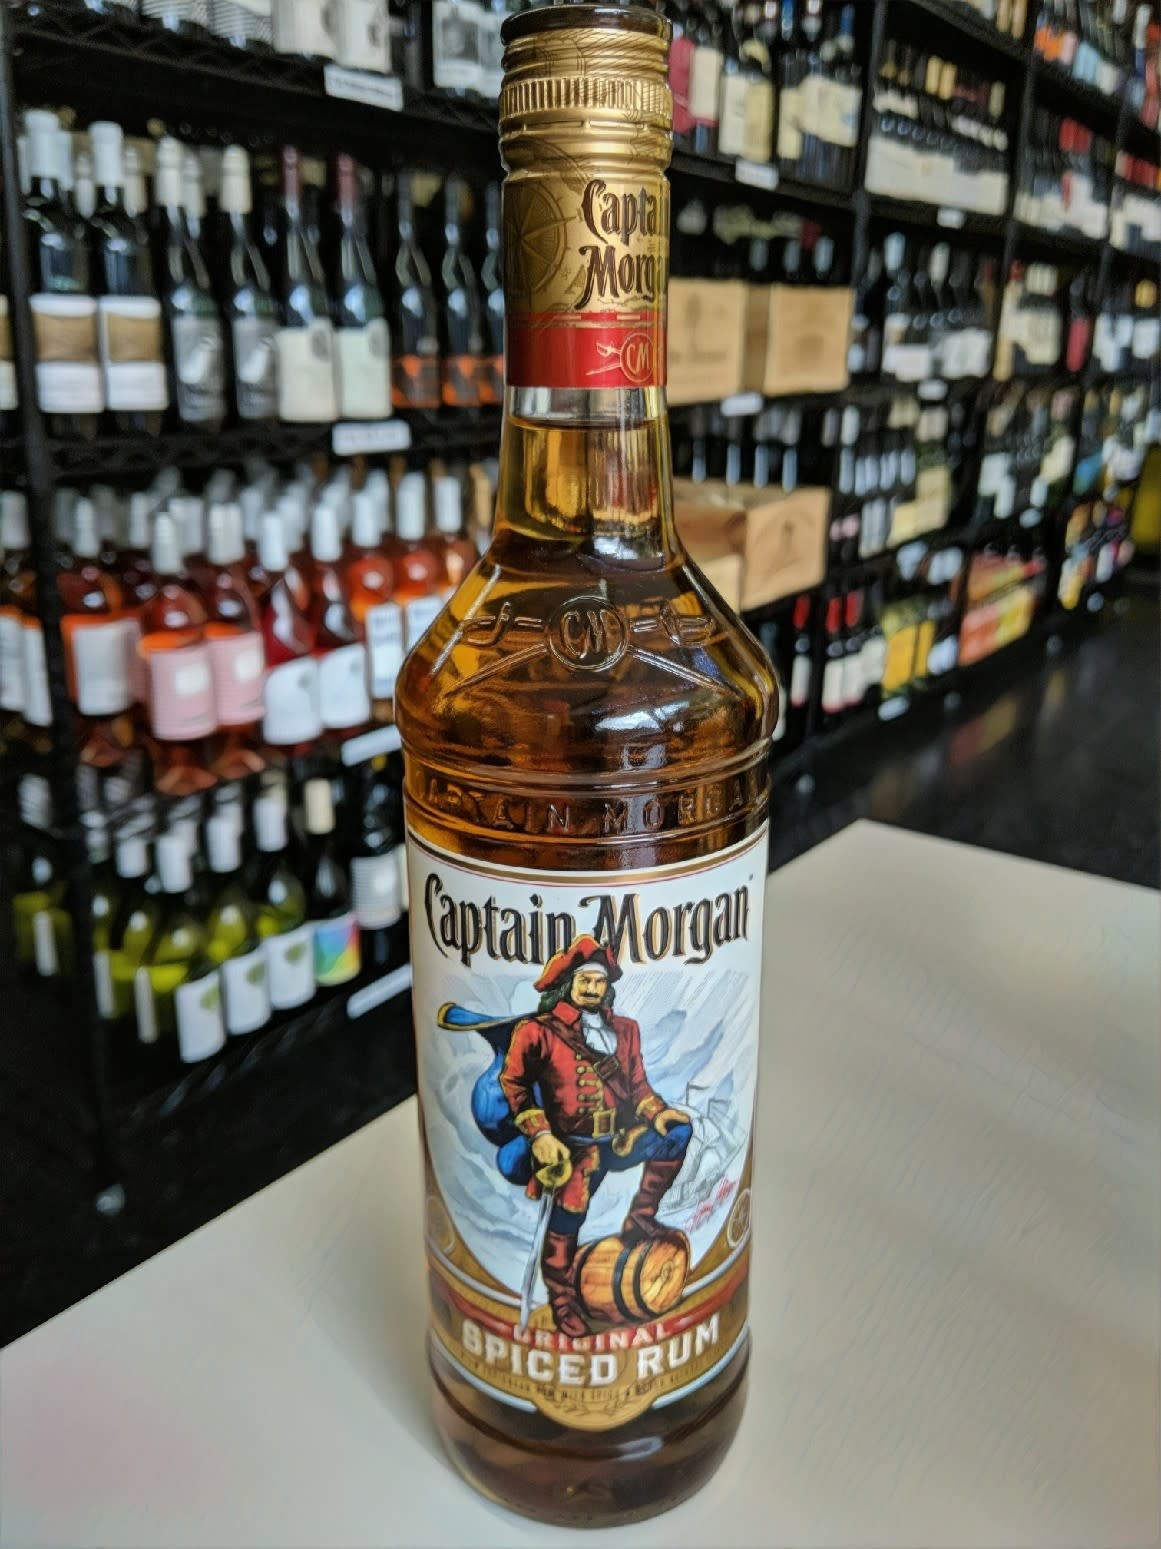 https://cdn.shoplightspeed.com/shops/623432/files/13846105/captain-morgan-captain-morgan-original-spiced-rum.jpg